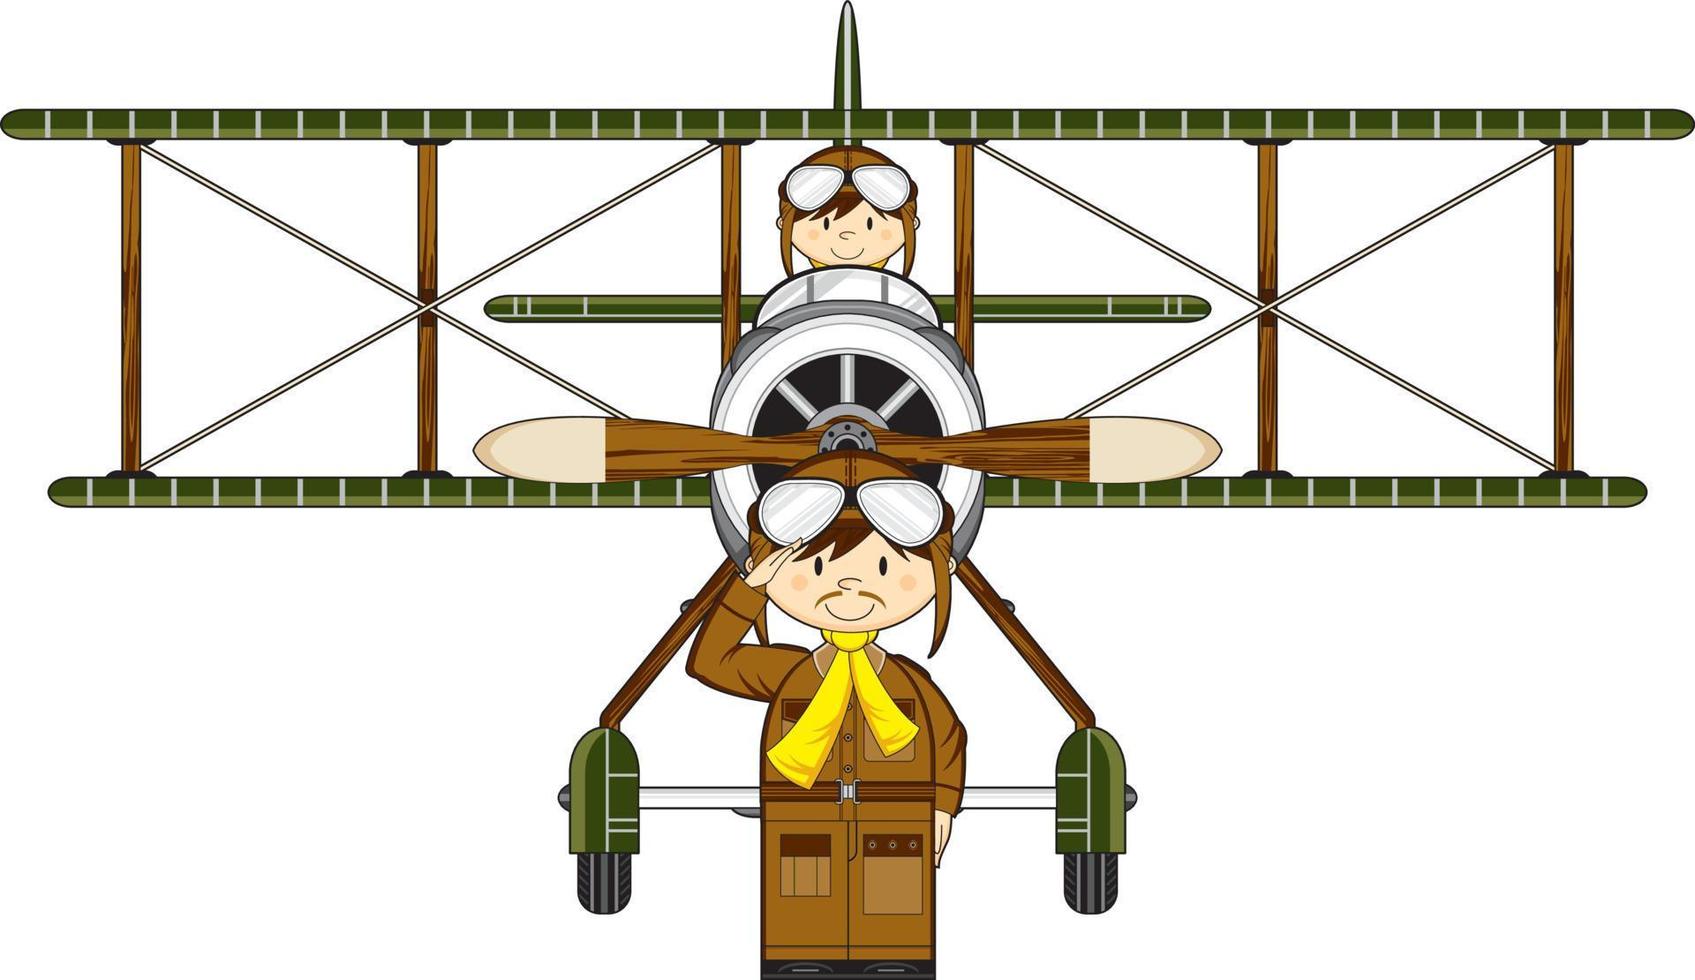 mignonne dessin animé ww1 style force aérienne pilotes et biplan vecteur